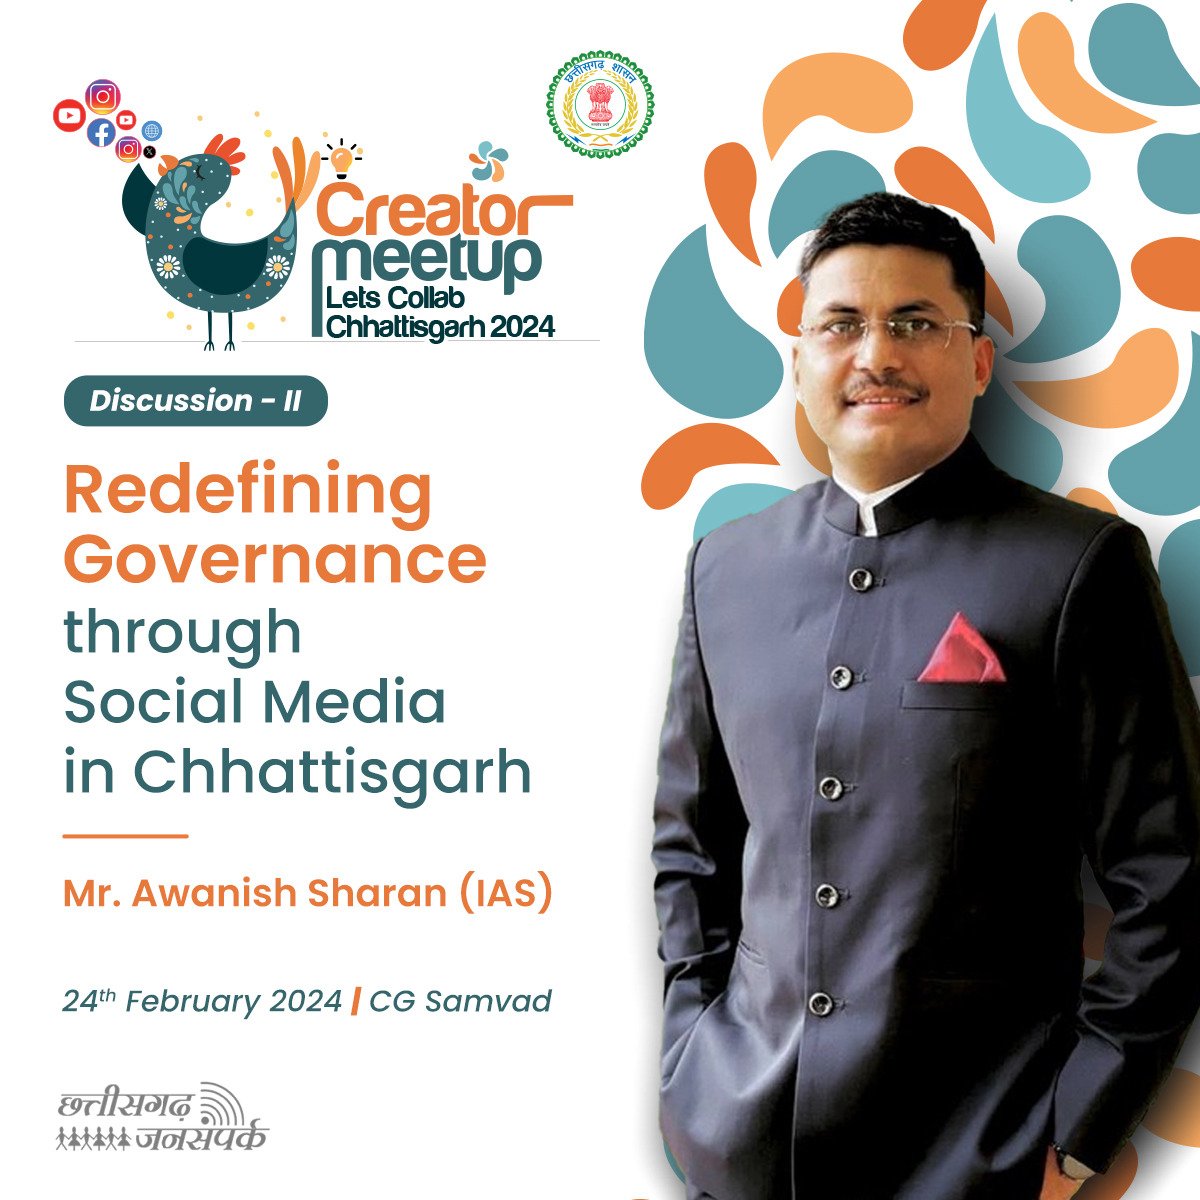 कभी हार न मानने के जज़्बे साथ असफलता को सीढ़ी बनाकर, सफलता की बुलंदी पर पहुँचने वाले आईएएस अधिकारी श्री @AwanishSharan से मिलें “लेट्स कॉलैब छत्तीसगढ़ 2024' में श्री अवनीश शरण “Redefining governance through social media in Chhattisgarh” विषय पर प्रकाश डालेंगे।